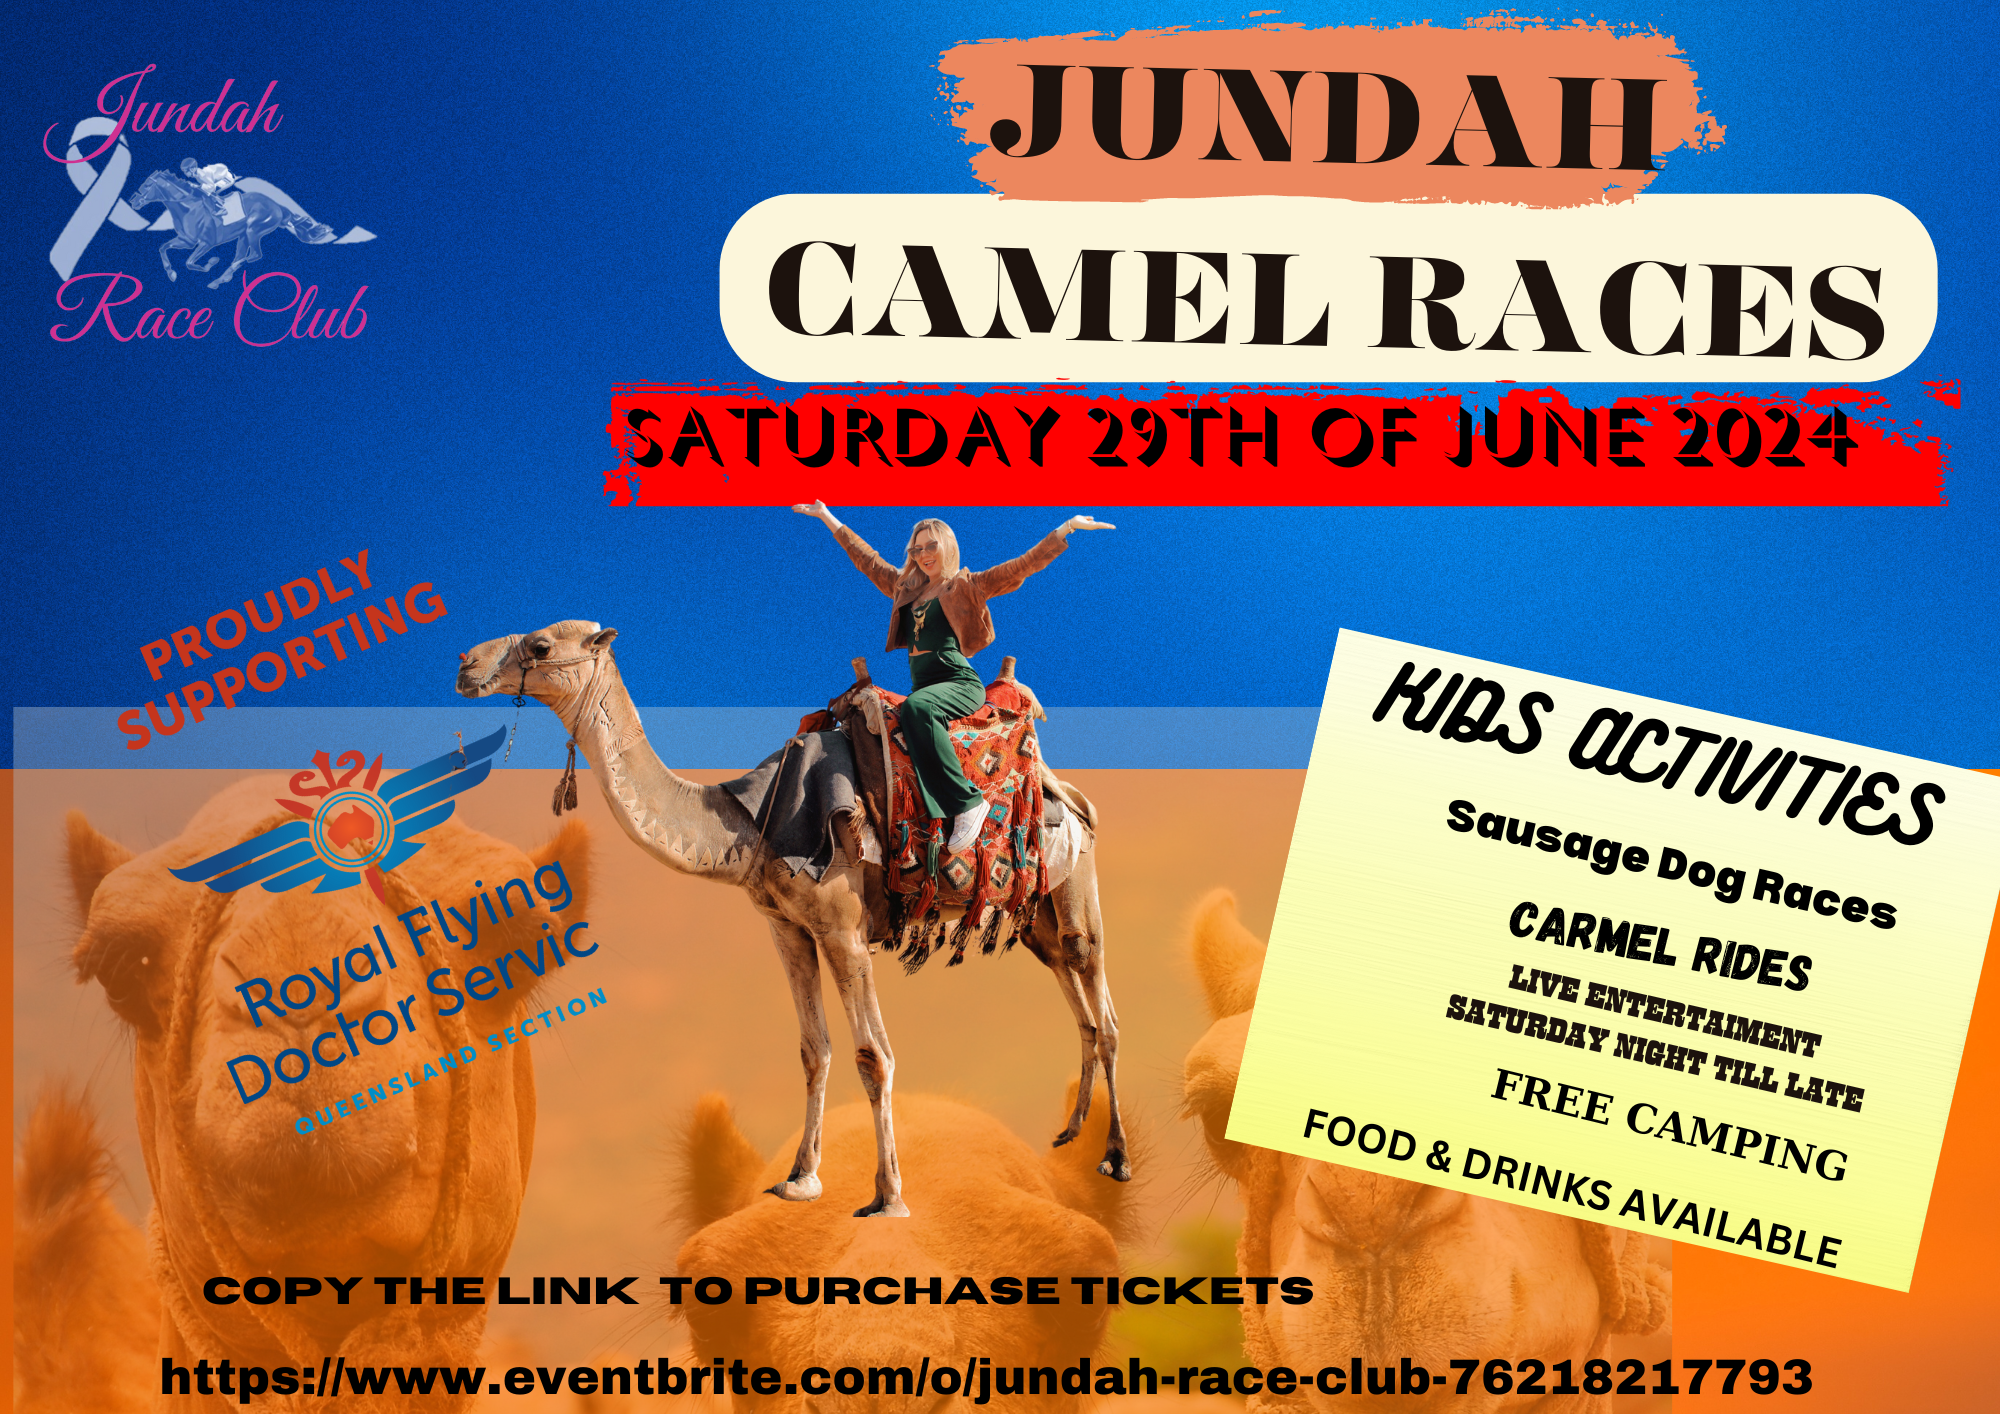 JUNDAH CAMEL RACES 9